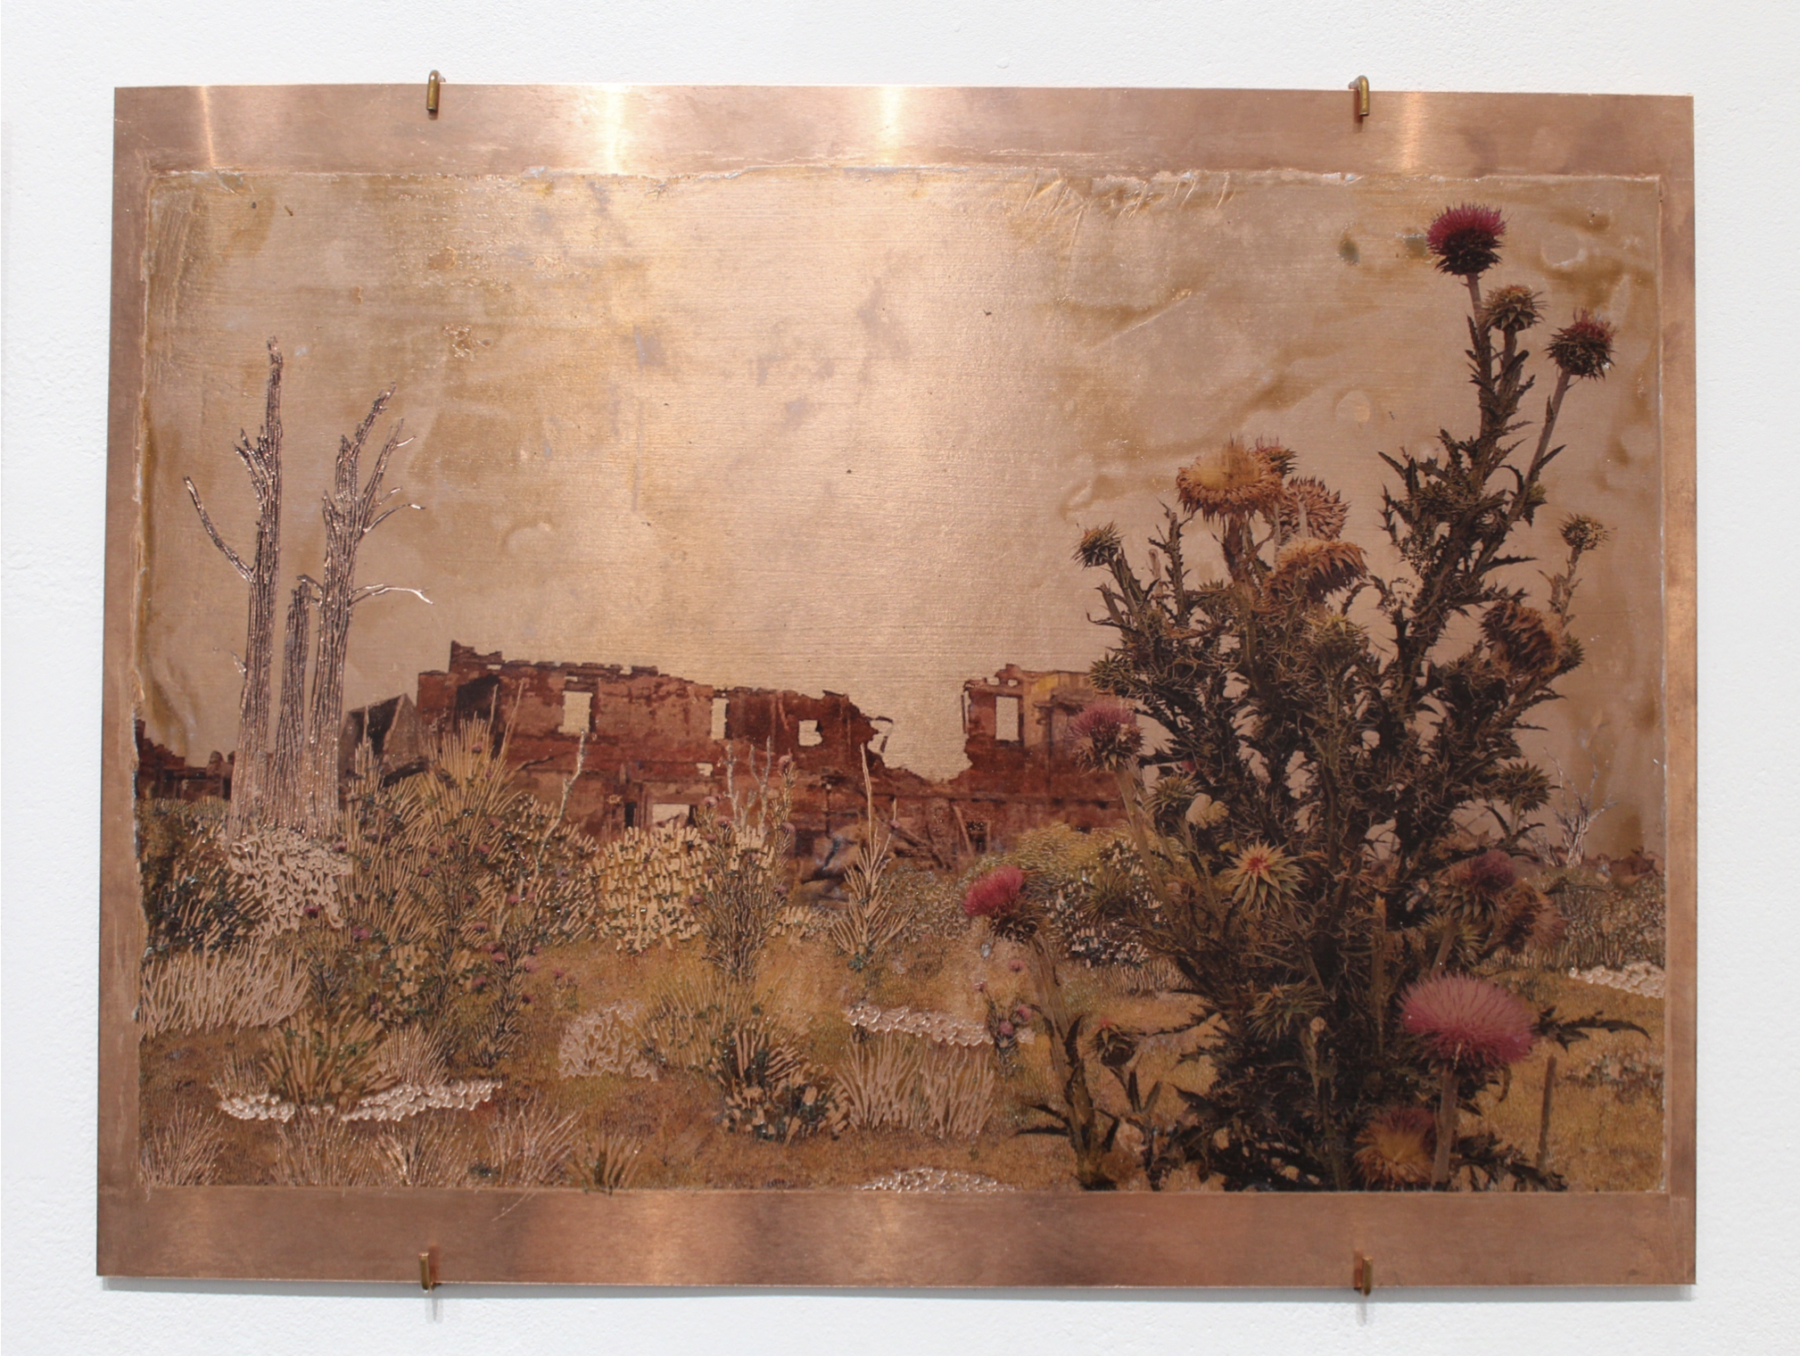 Raphaëlle Peria, Les larmes de Tripantu, transfert photographique sur cuivre gravé, 30 x 40cm, 2021